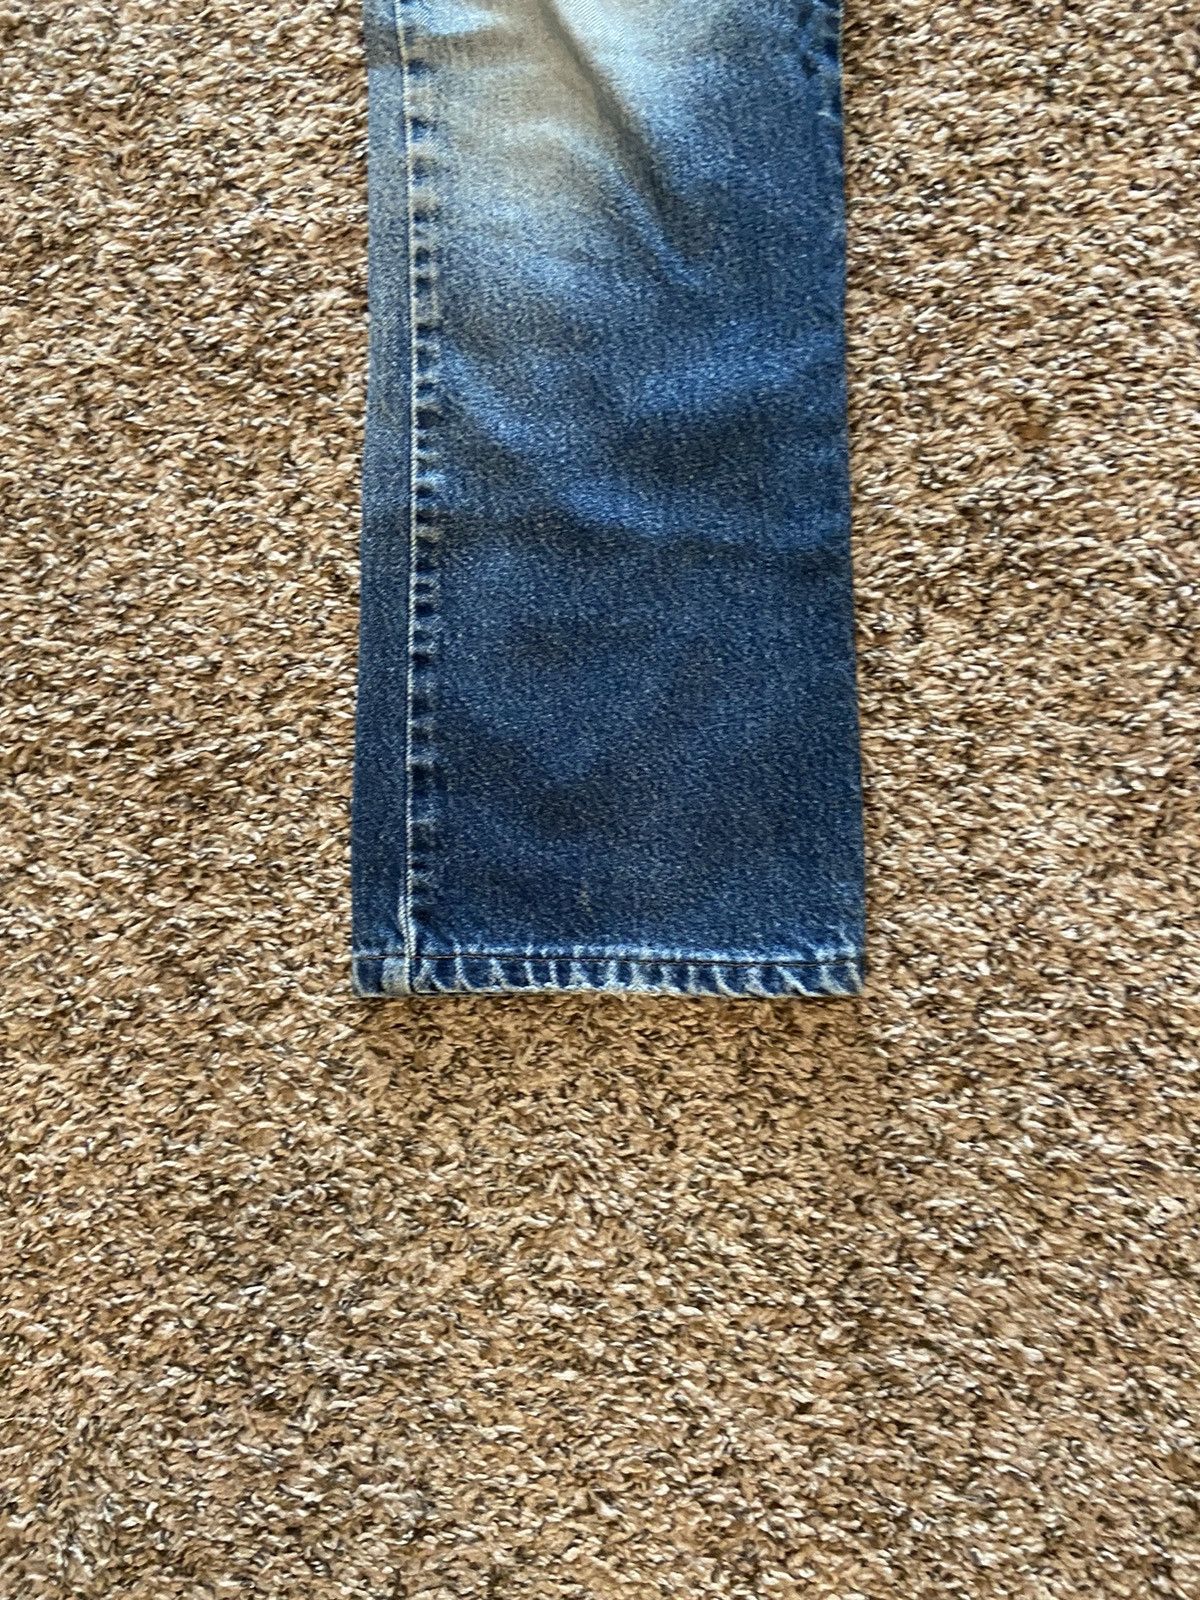 Vintage Vintage Levi’s 505 Distressed Denim Jeans Size US 30 / EU 46 - 5 Thumbnail